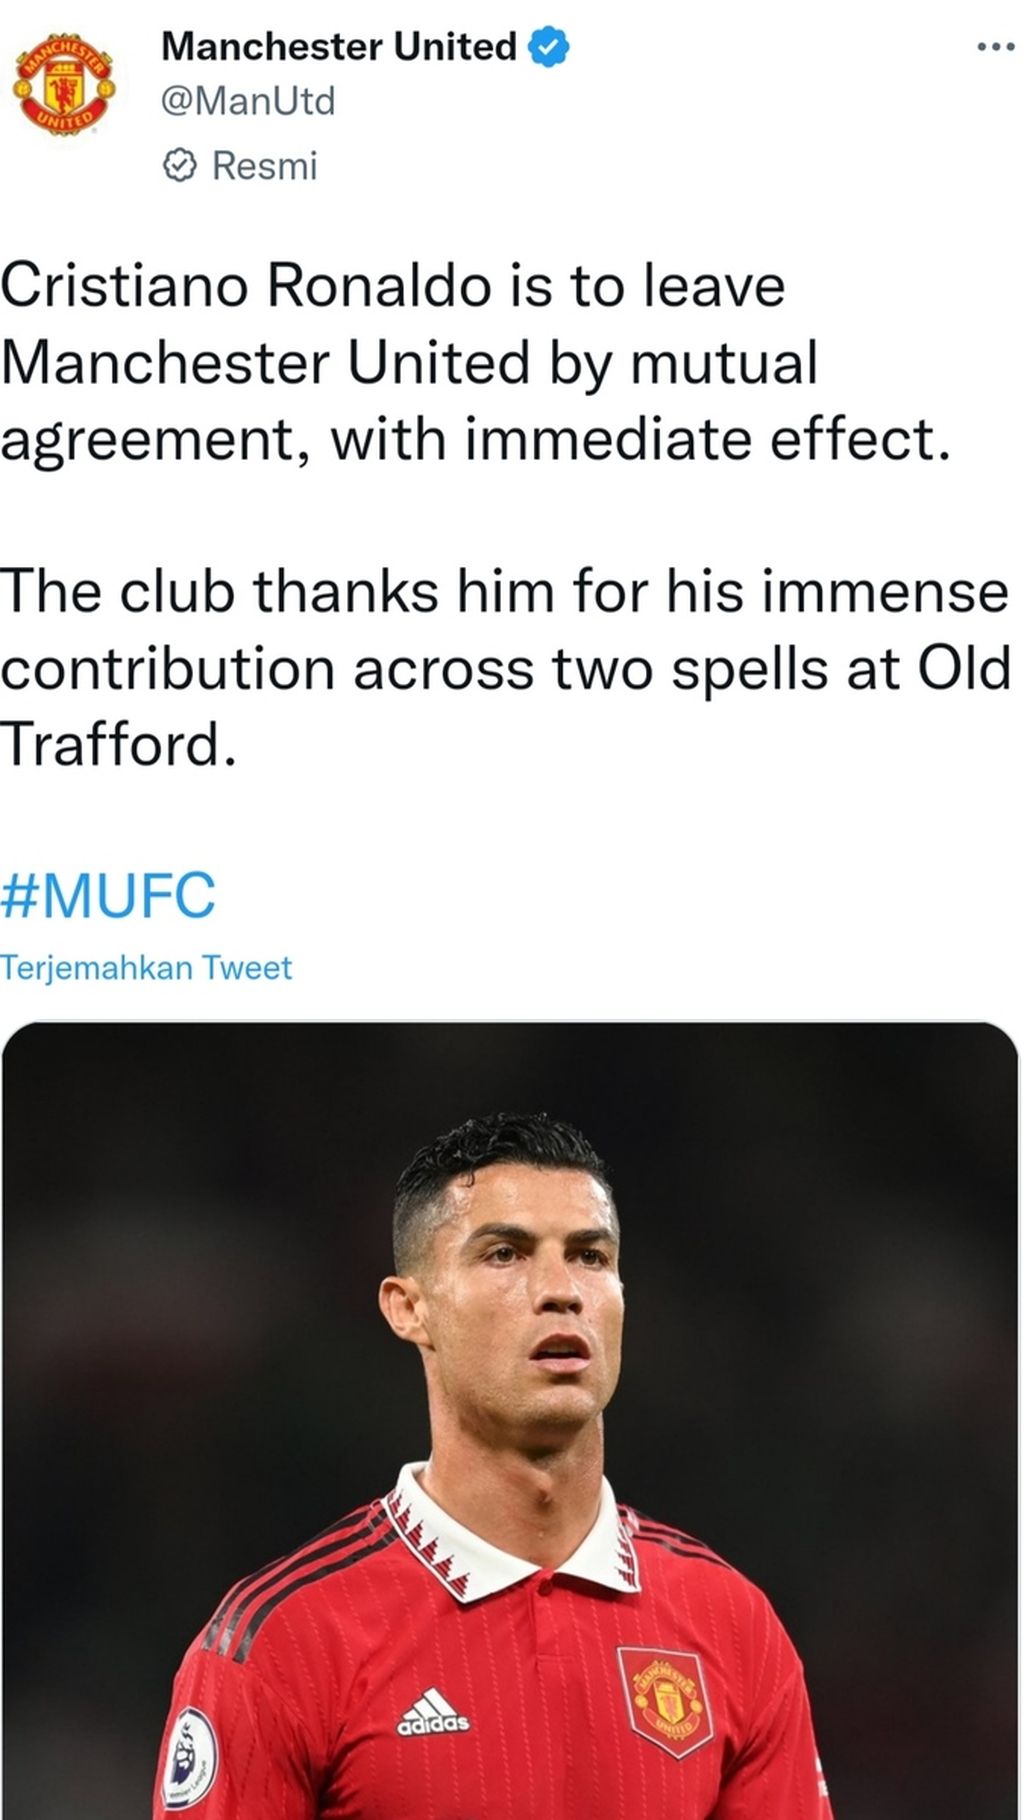 Pengumuman Manchester United tentang perpisahan dengan Cristiano Ronaldo berdasarkan kesepakatan bersama.